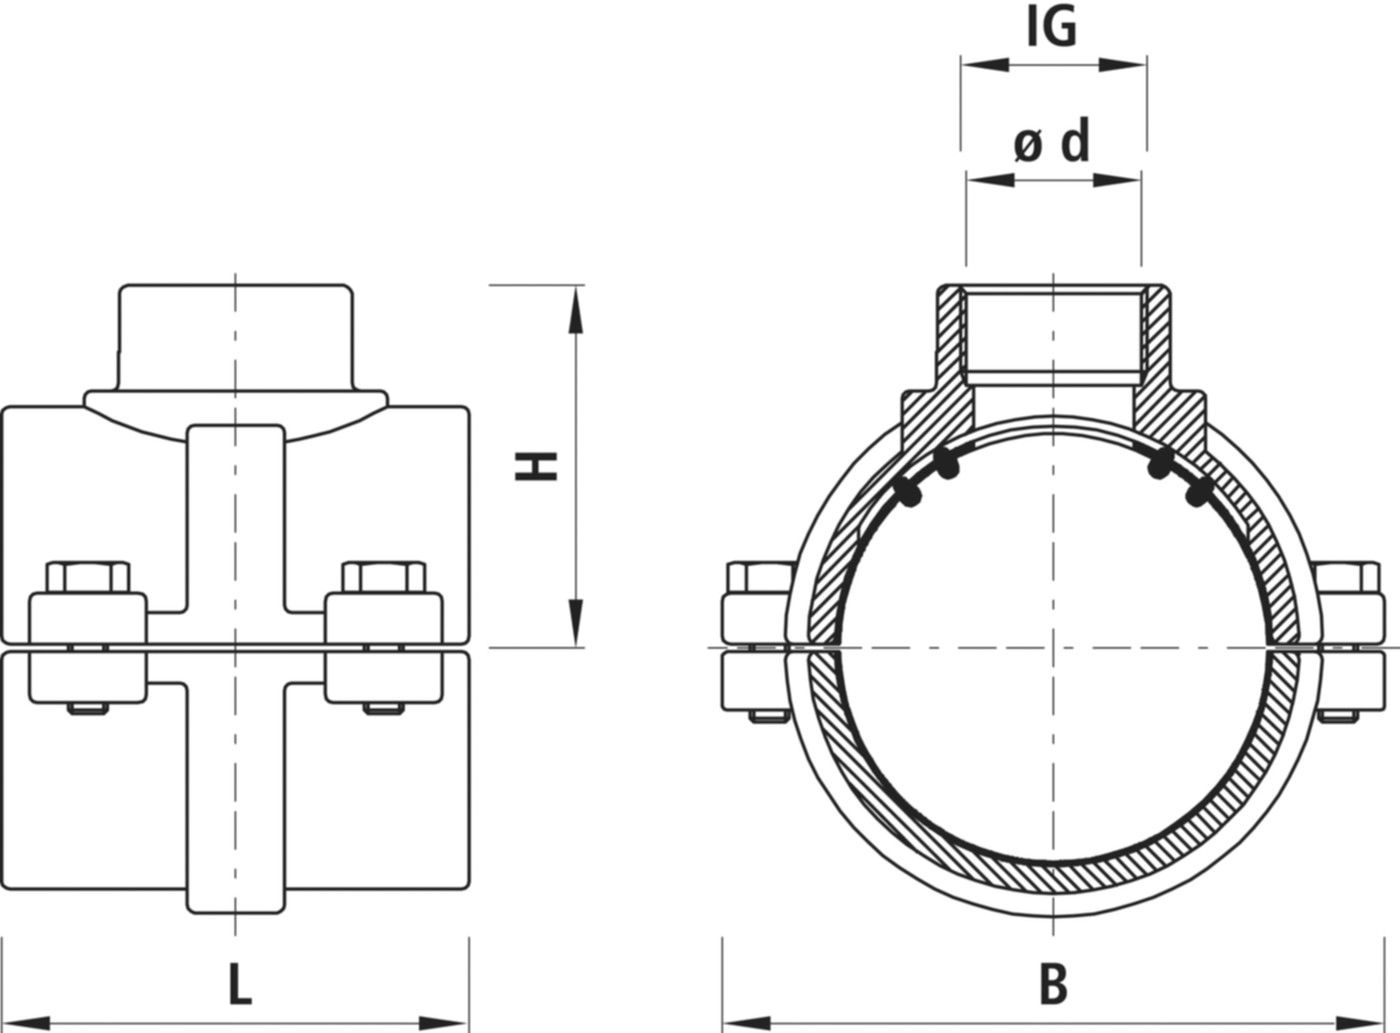 Haku-Anbohrschelle mit IG für Gas 5255 d 110mm - 1 1/4" - Hawle Hausanschluss- und Anbohrarmaturen